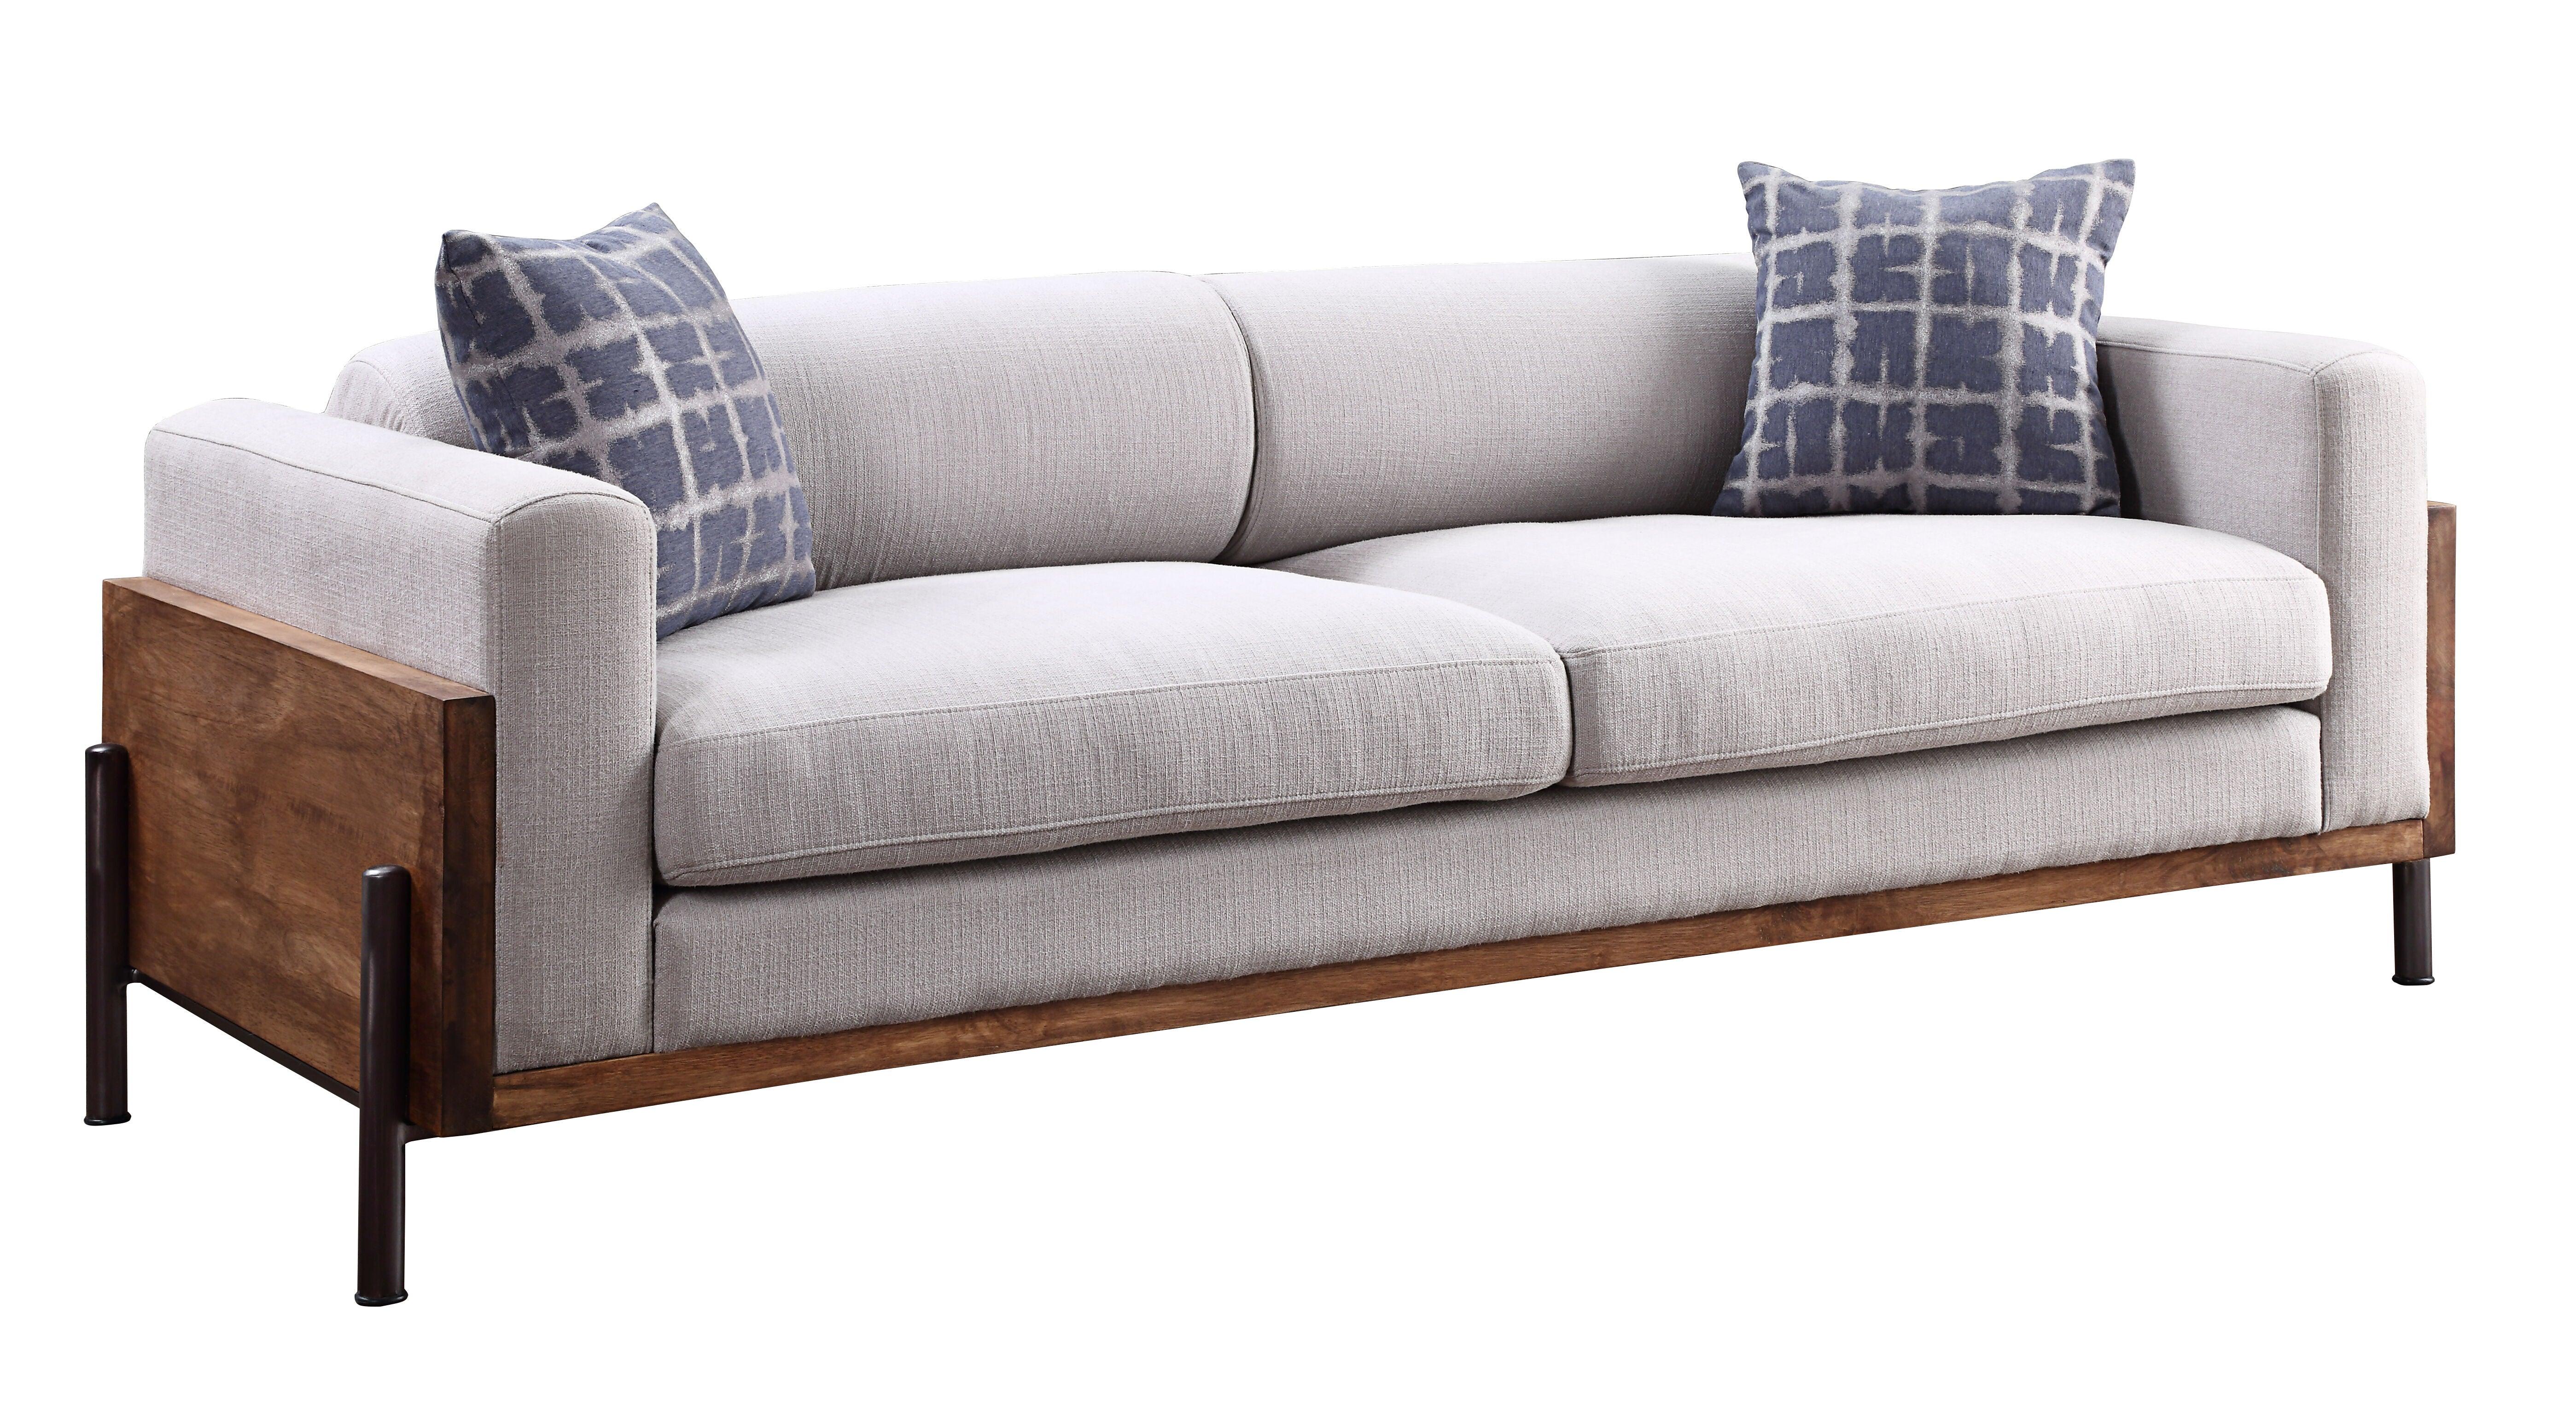 ACME - Pelton - Sofa - Fabric & Walnut - 5th Avenue Furniture